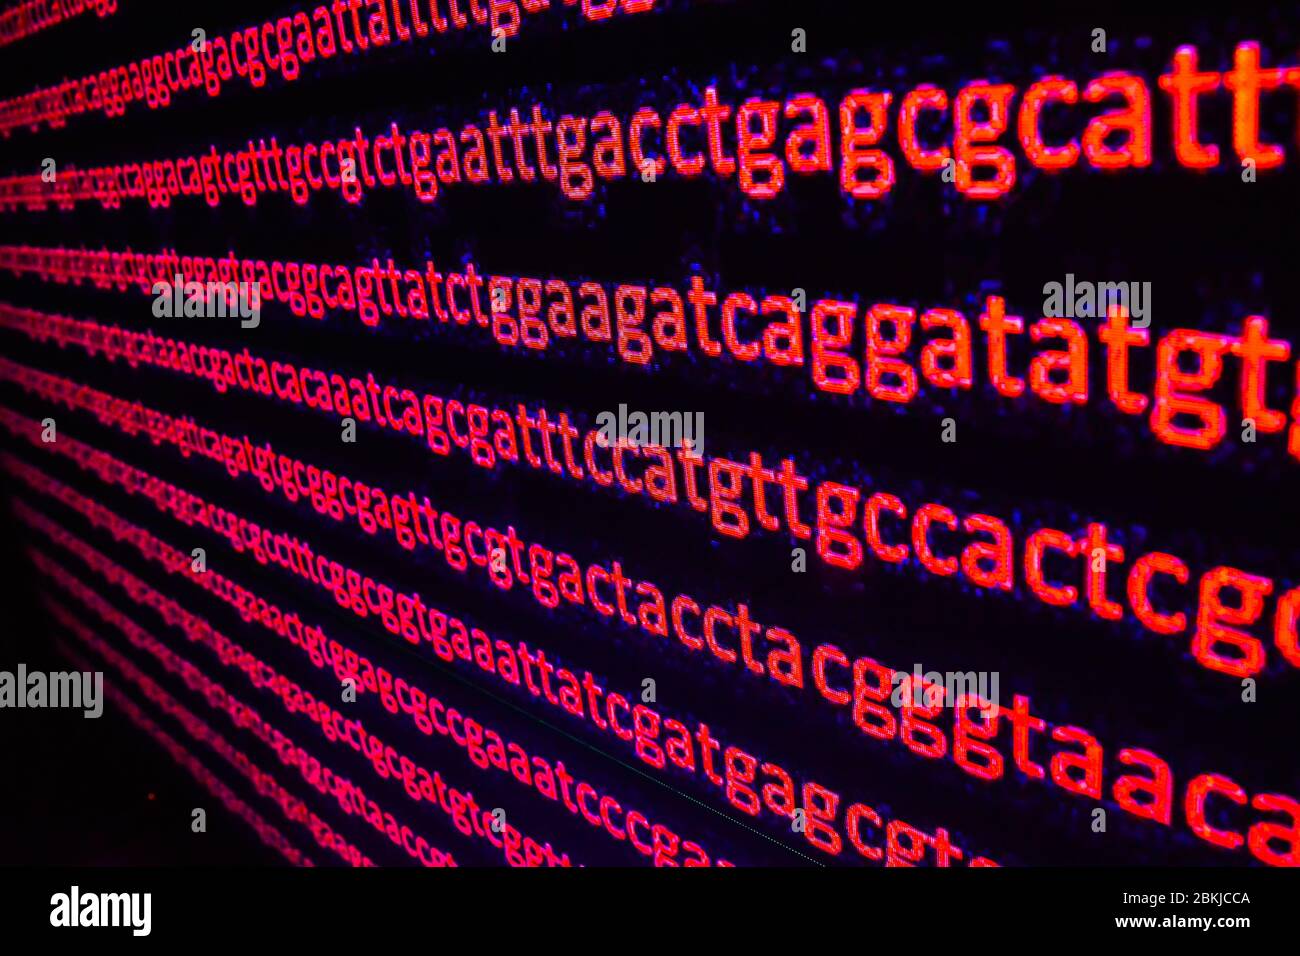 Genomische Sequenzierung. Die Abfolge der Basen in der DNA. Stockfoto